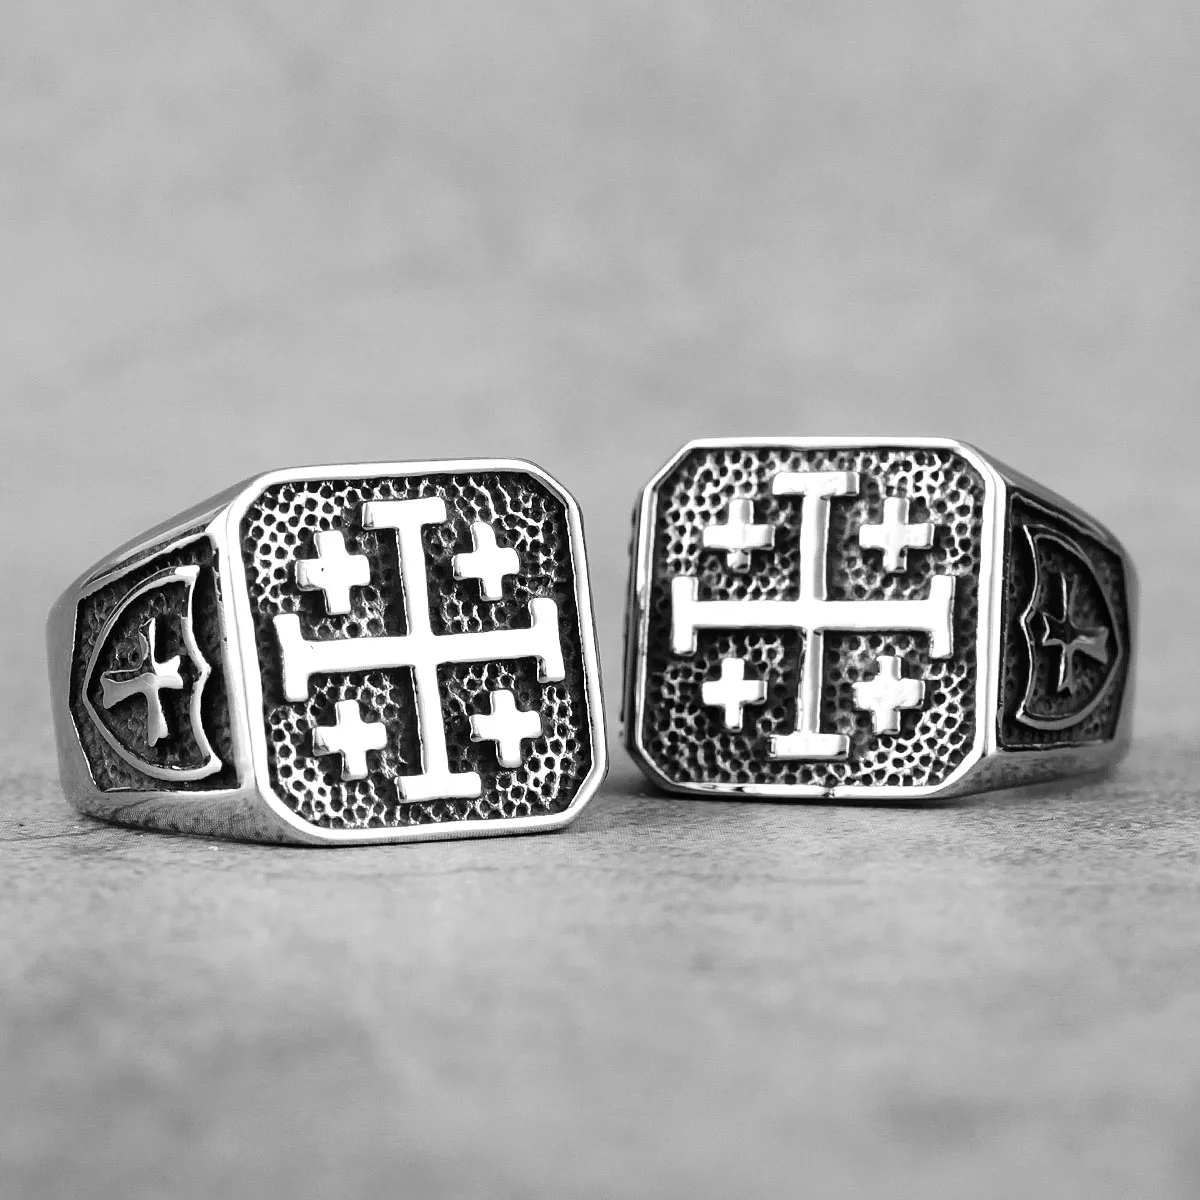 

Jerusalem Cross Religion Stainless Steel Mens Rings Simple Retro for Male Boyfriend Biker Jewelry Creativity Gift Wholesale